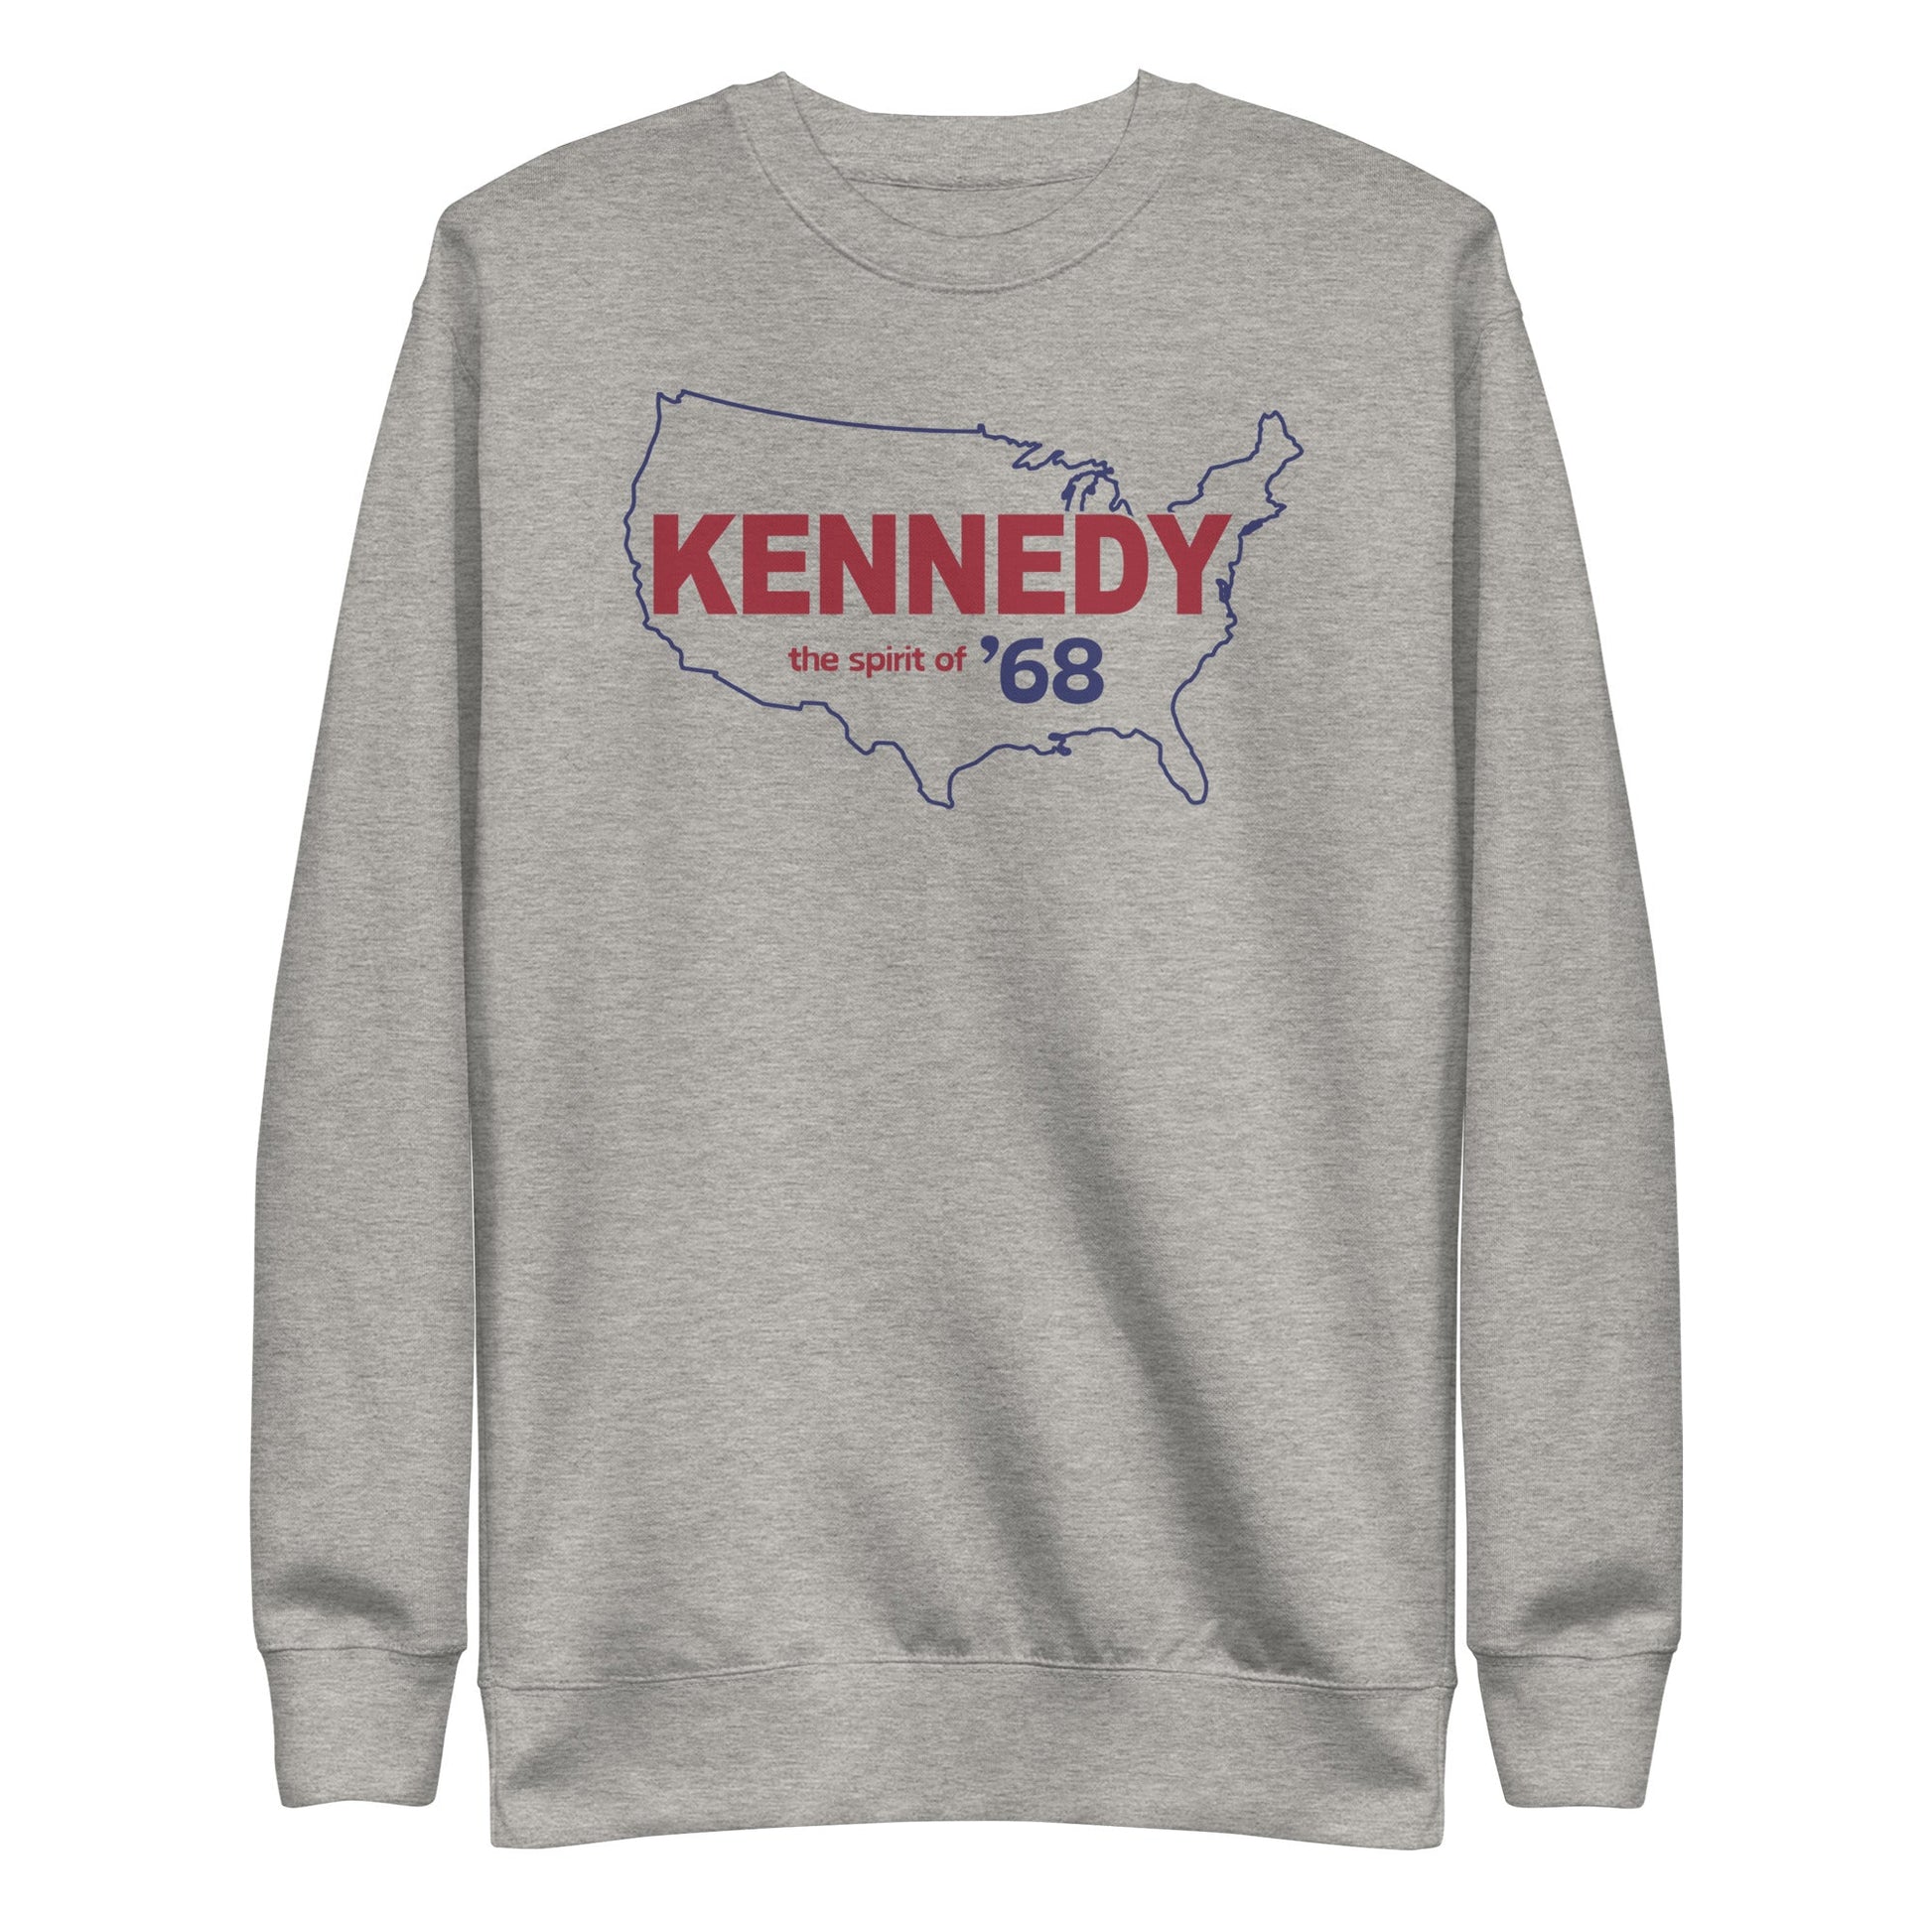 Kennedy Spirit of '68 Unisex Premium Sweatshirt - TEAM KENNEDY. All rights reserved